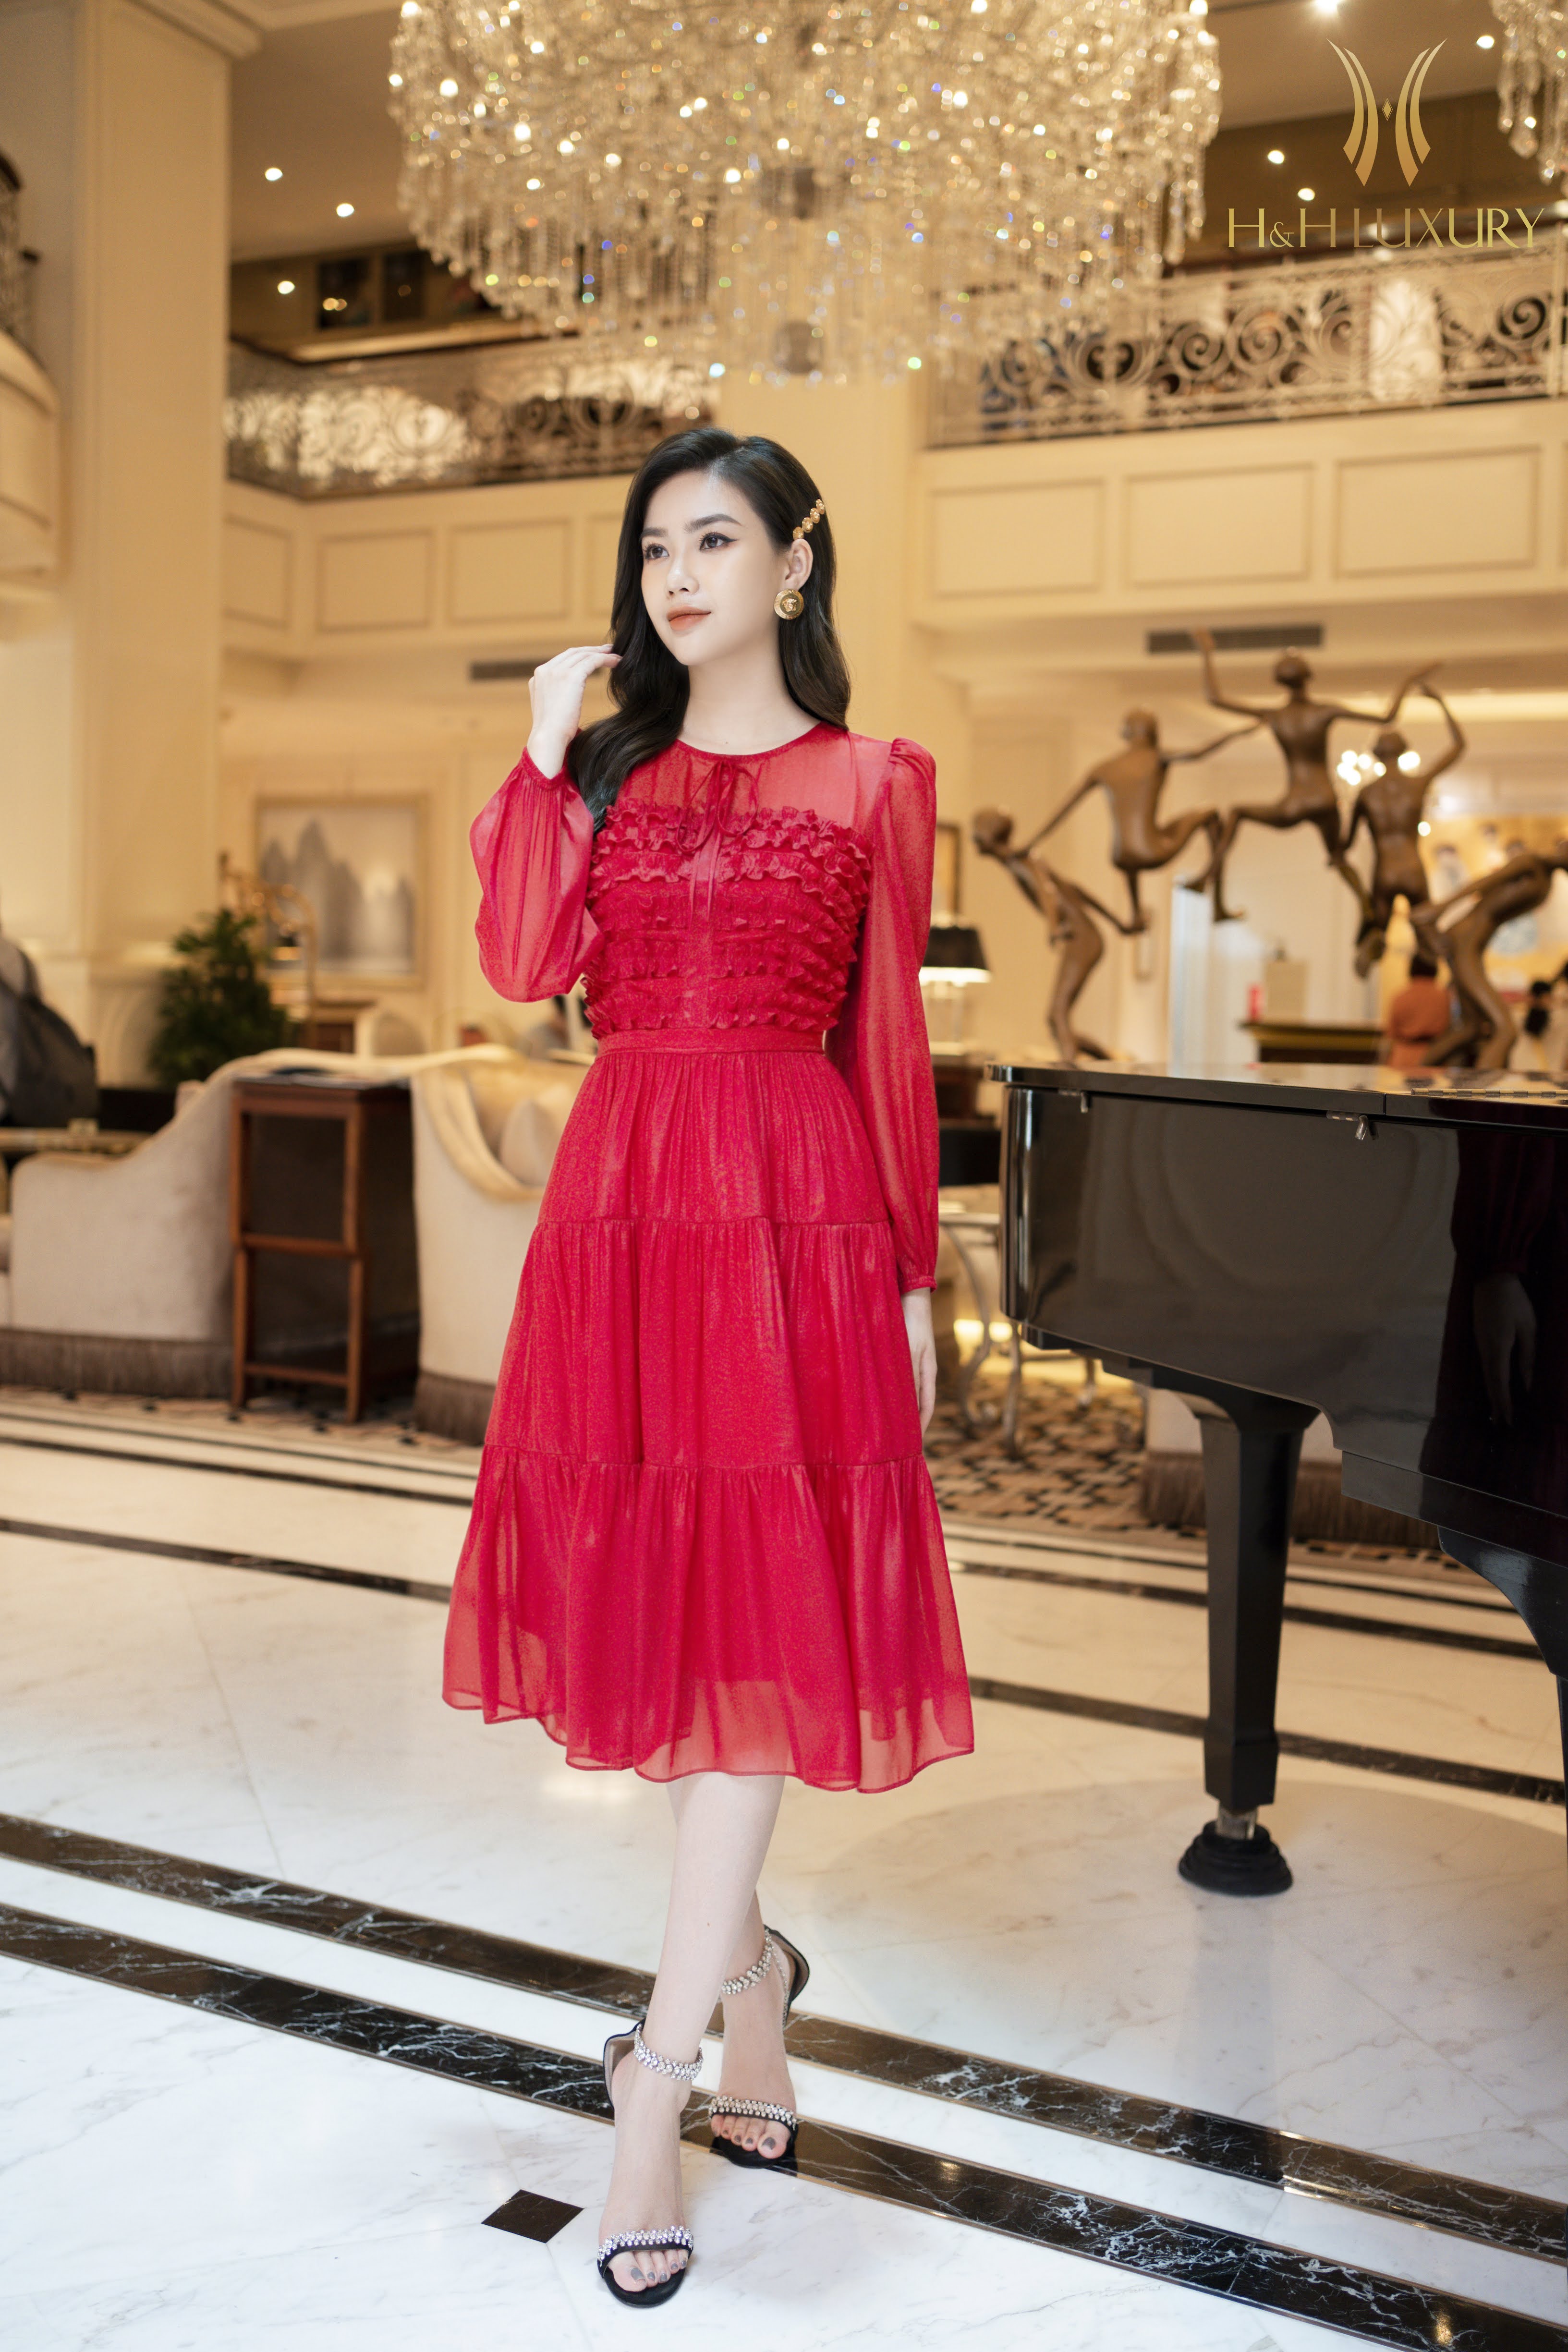 Đầm xòe đỏ bèo thân tay dài nhún 3 tầng